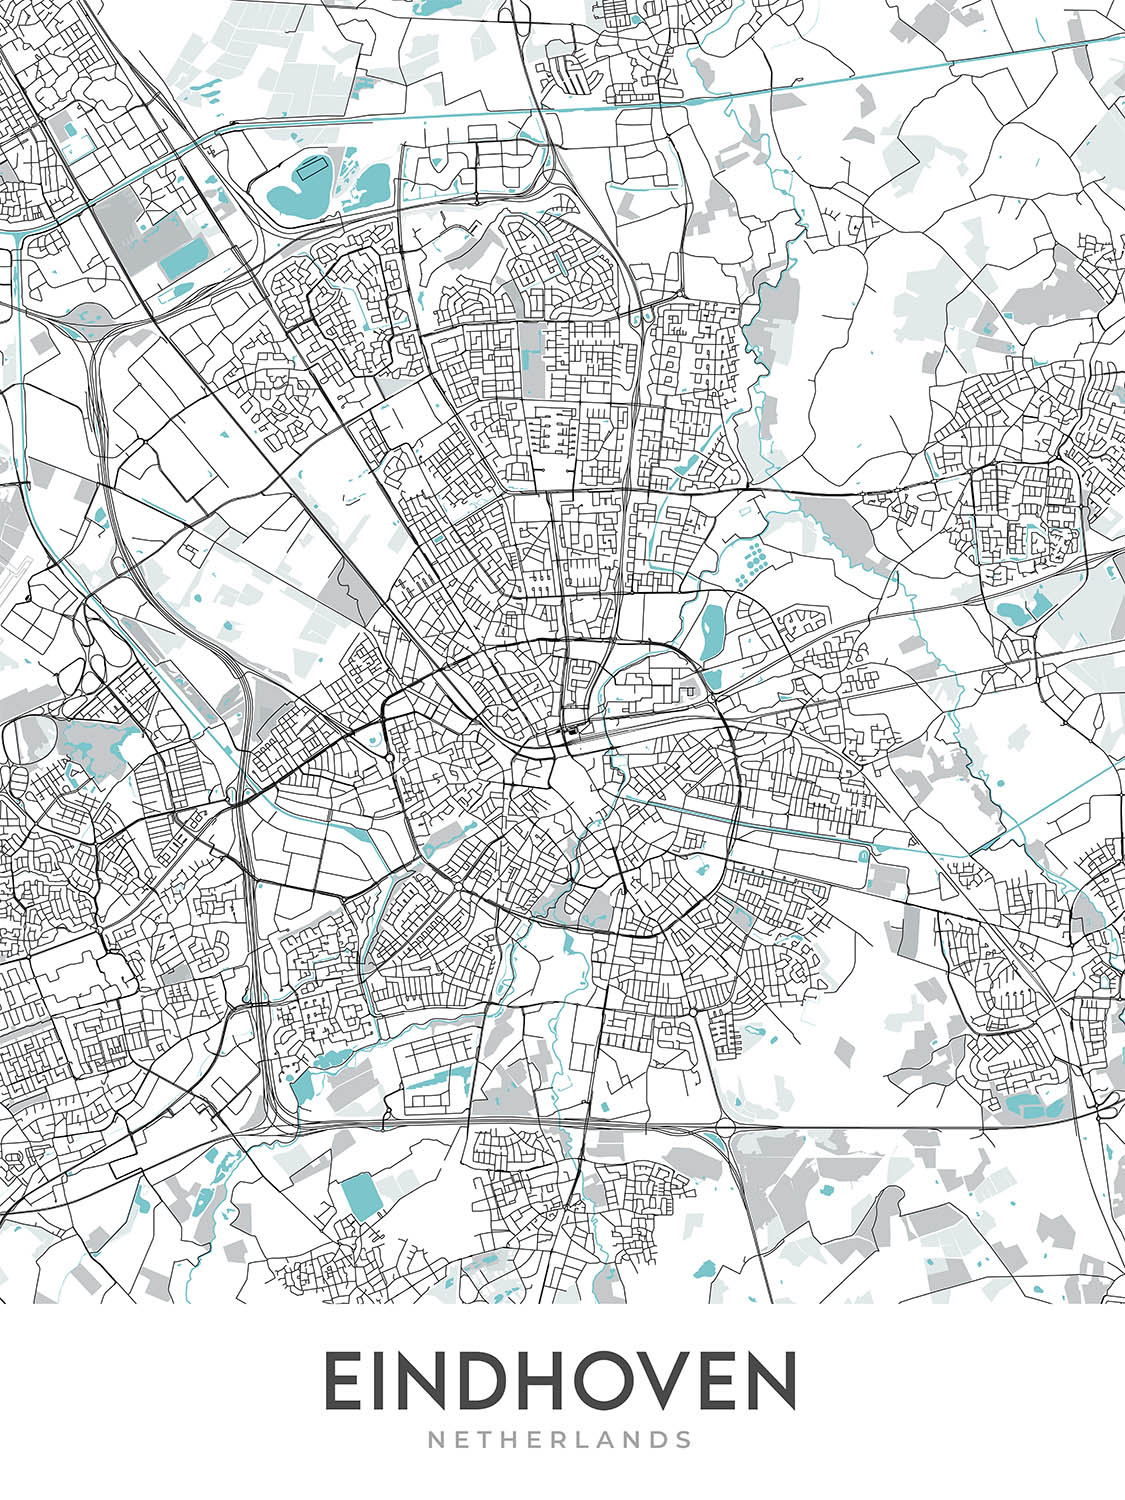 Mapa moderno de la ciudad de Eindhoven, Países Bajos: Centrum, Philips Stadion, A2, A67, Tongelre